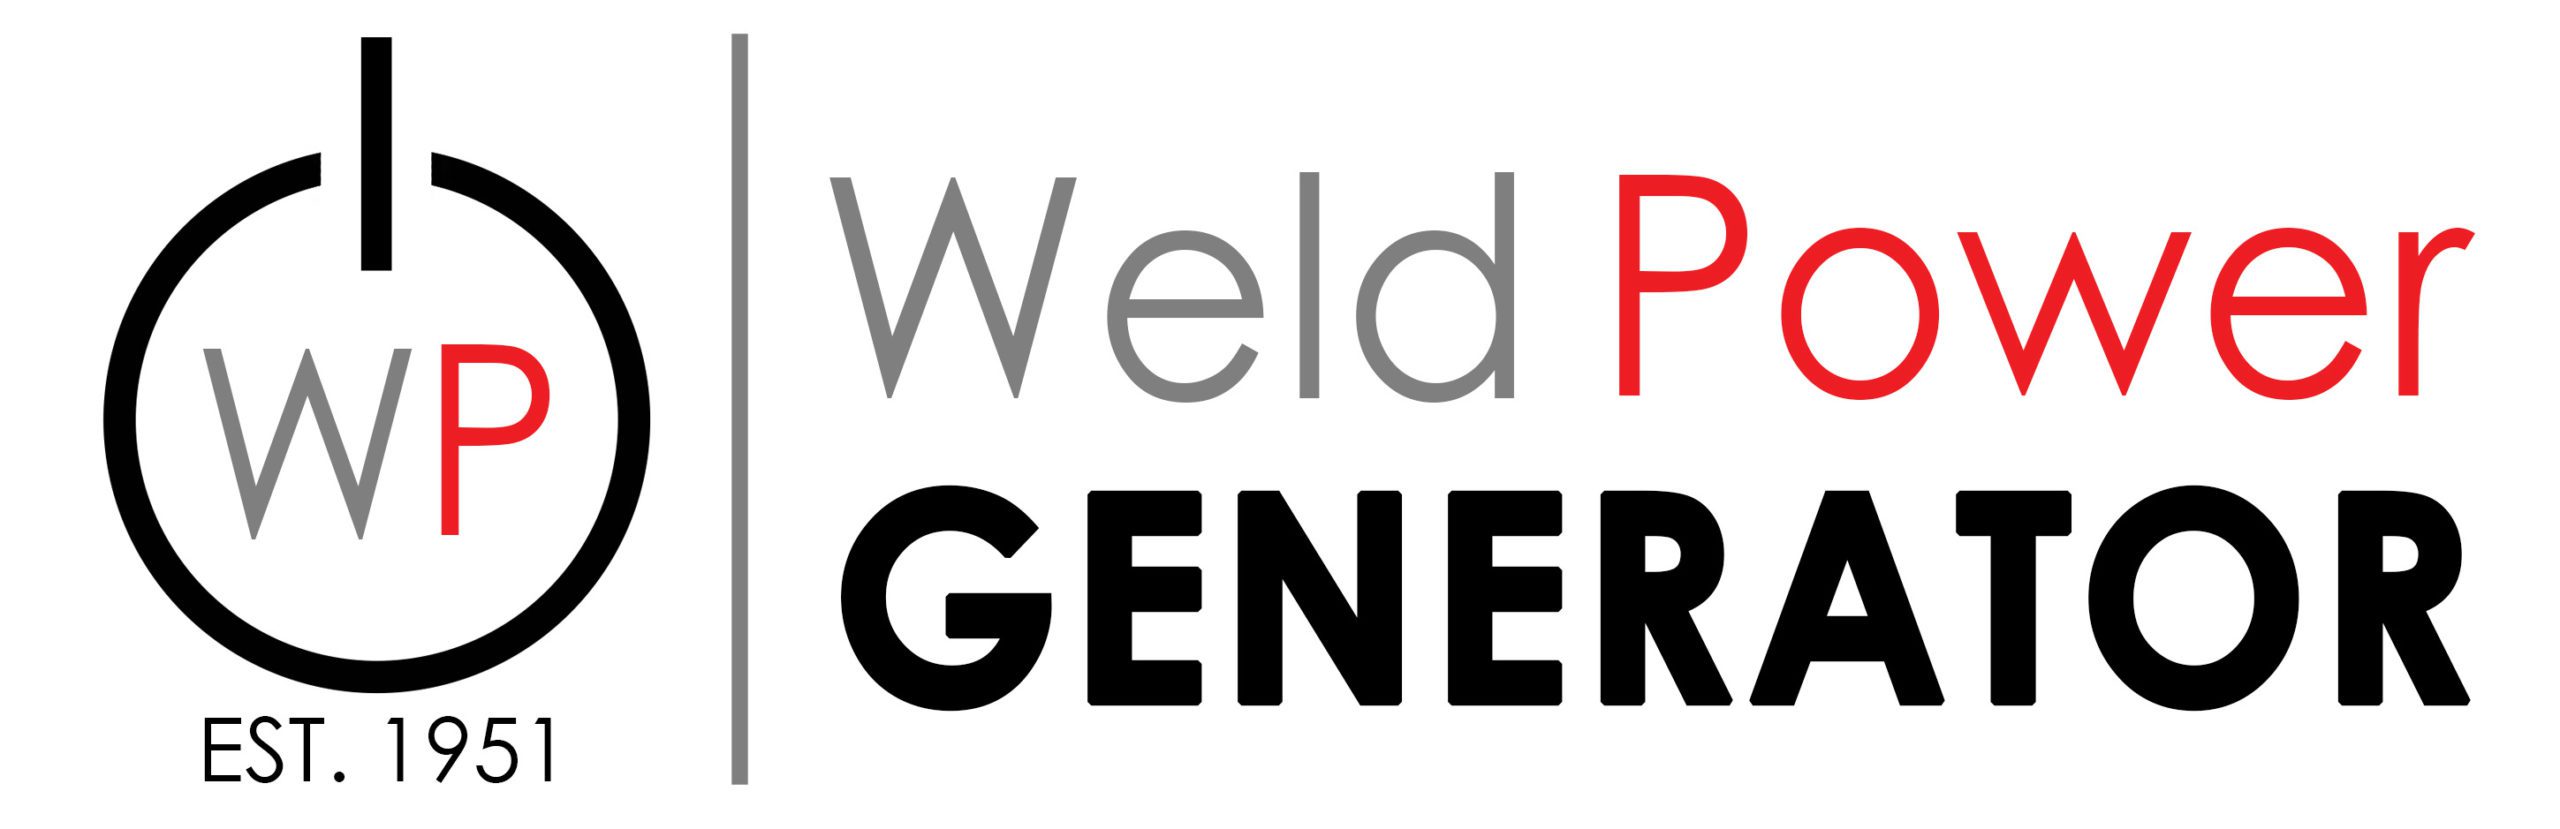 Weld Power Generator